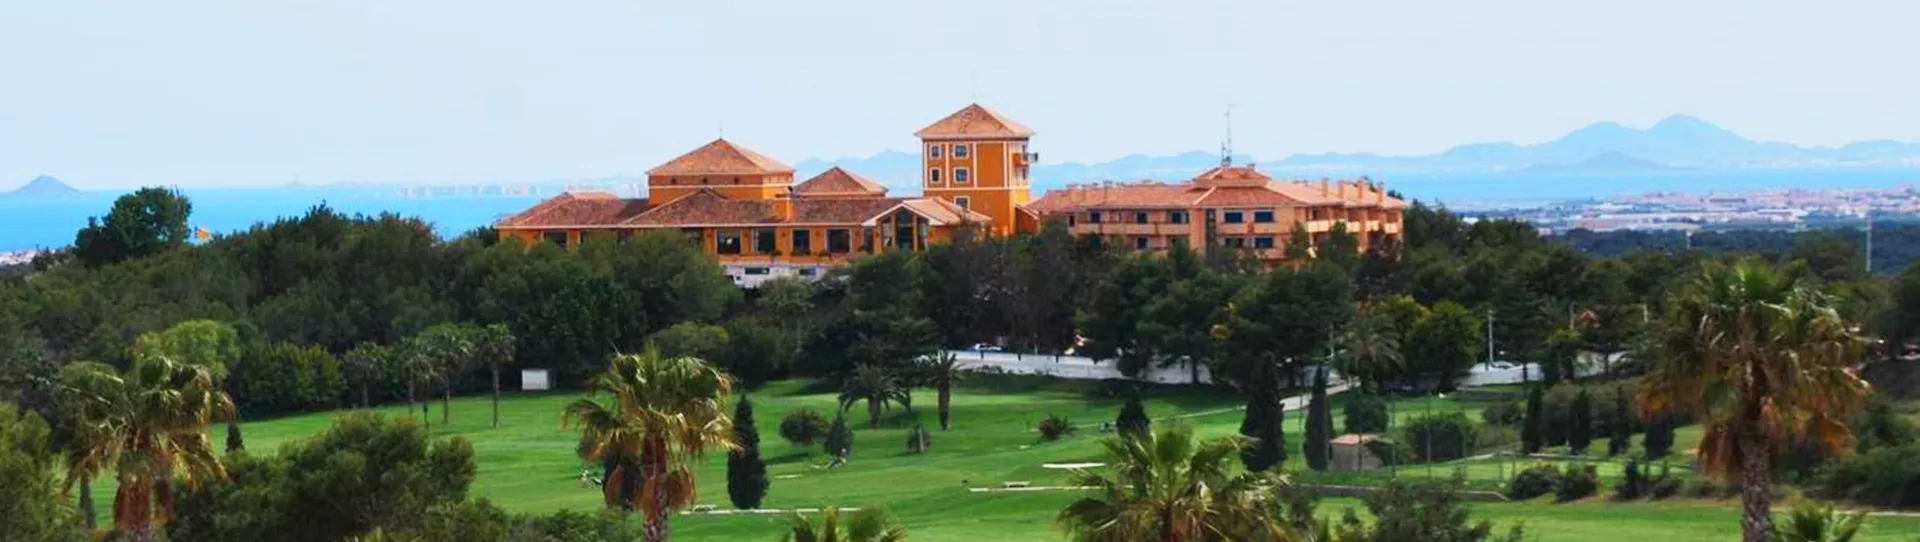 Spain golf courses - Campoamor Golf Course - Photo 1